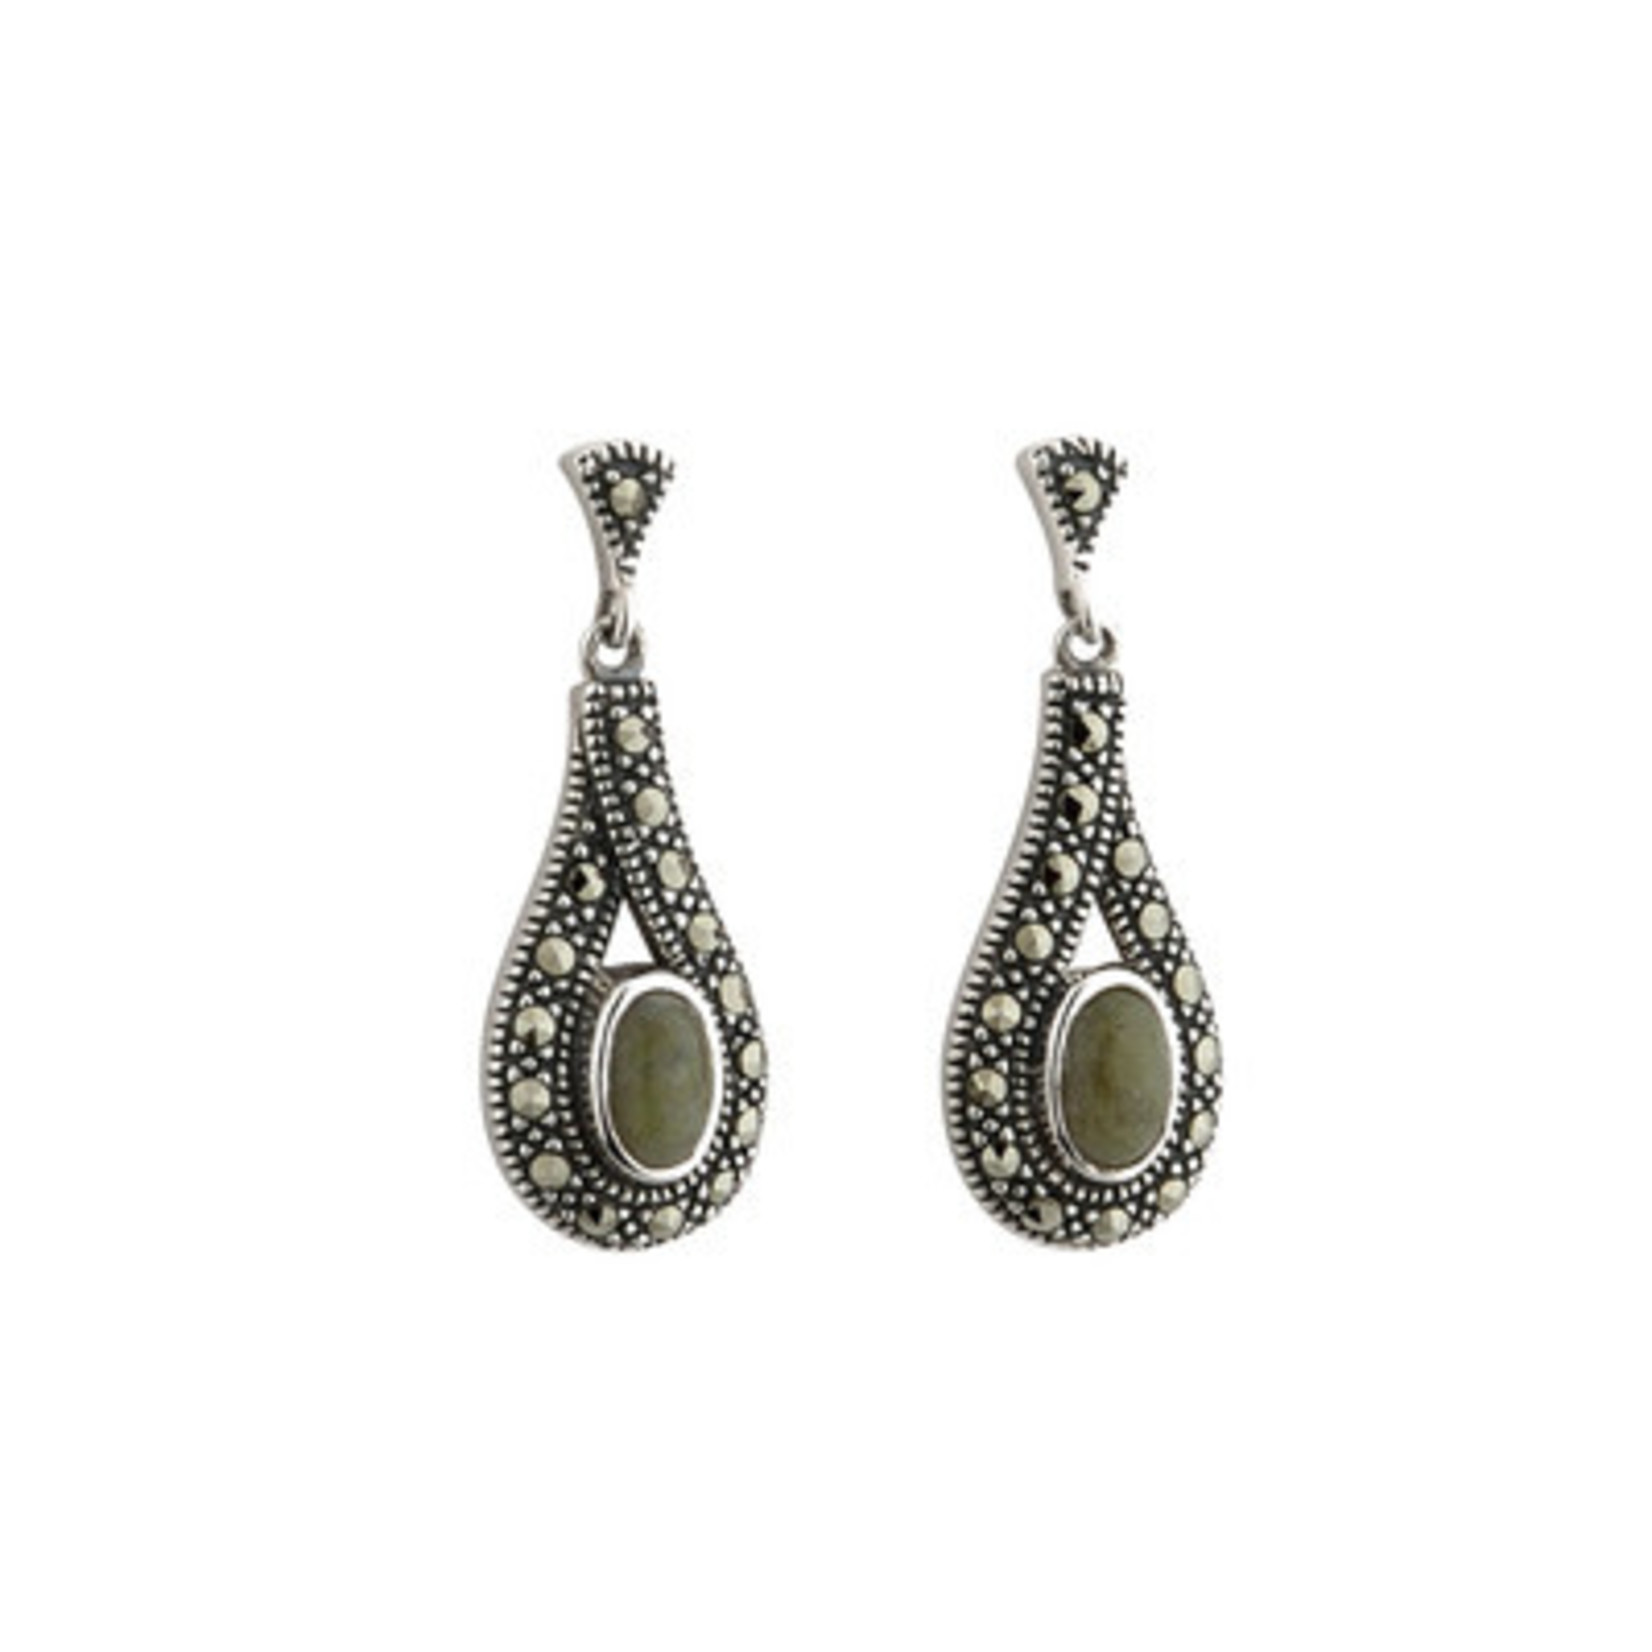 Solvar S/S Connemara Marble & Marcasite Post Dangle Earrings